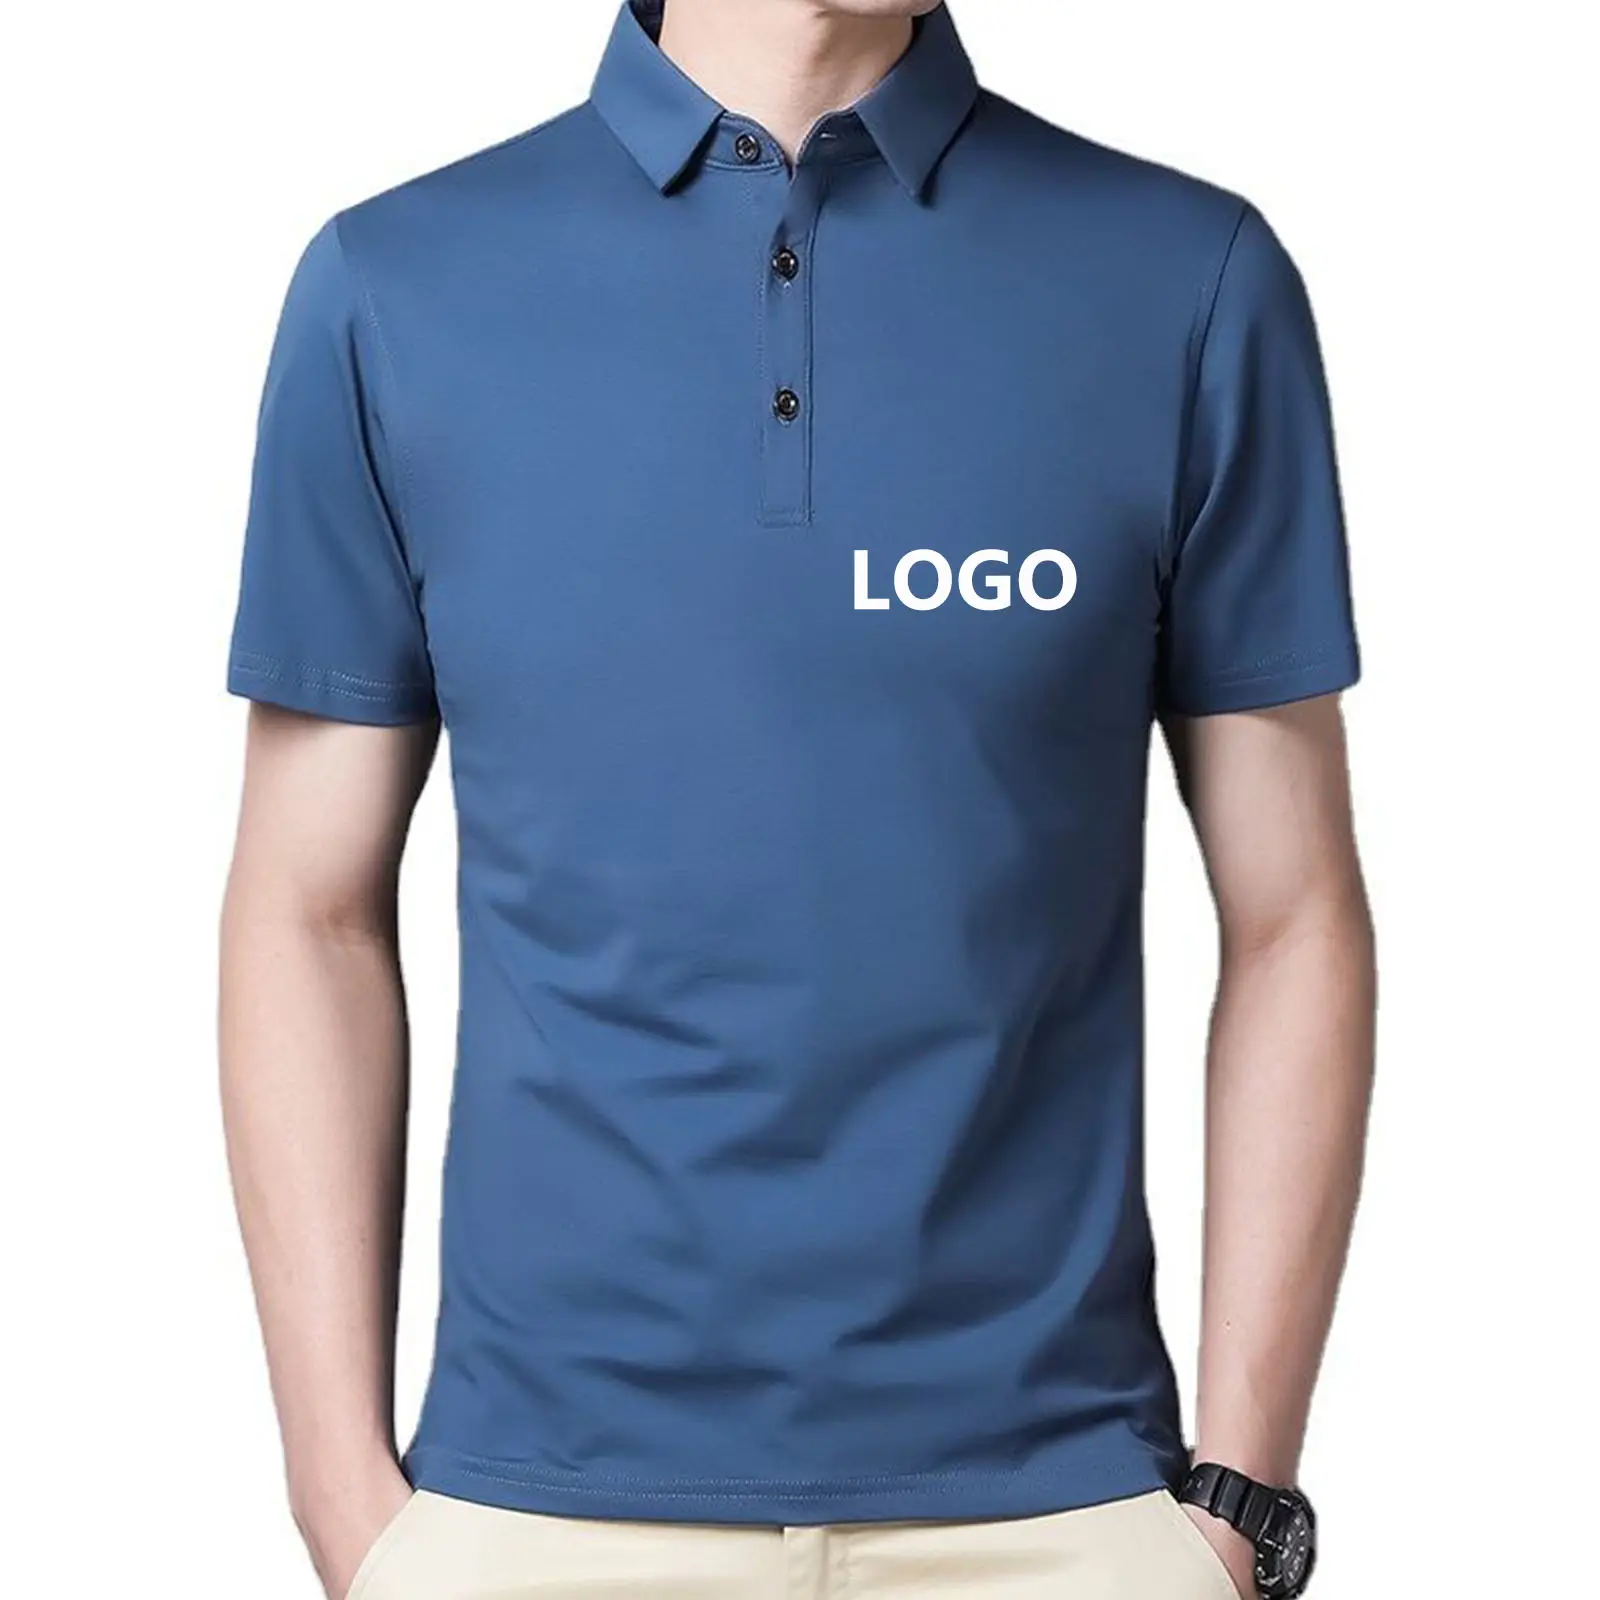 Camiseta polo personalizada de tecido piquê para homens, camisas polo personalizadas com logotipo personalizado para homens, camisetas polo personalizadas